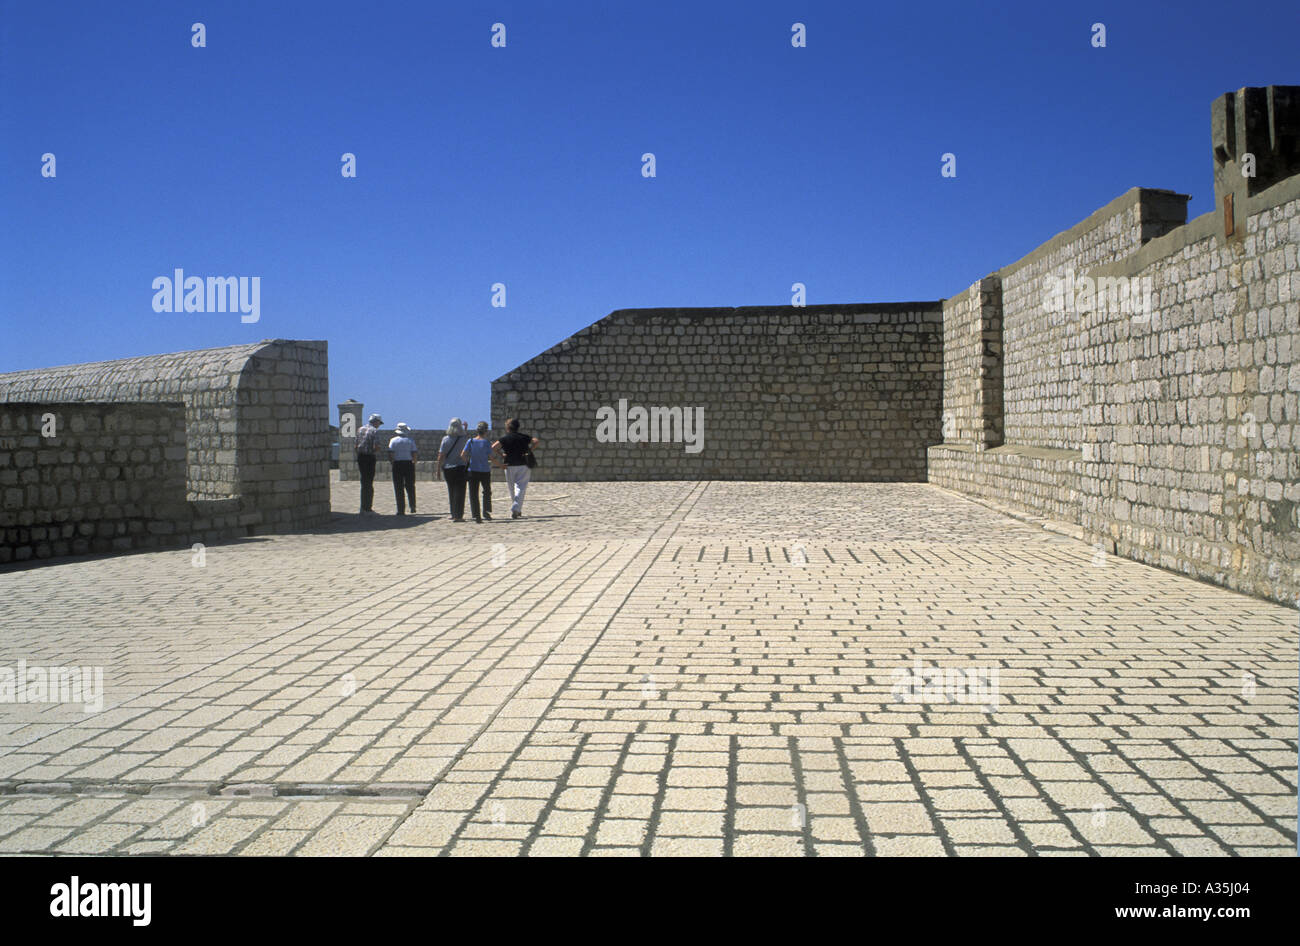 Les touristes dans la distance à la découverte de la ville en pierre du xiiie siècle autour des murs de parapet Dubrovnik Croatie Dalmatie du sud Banque D'Images